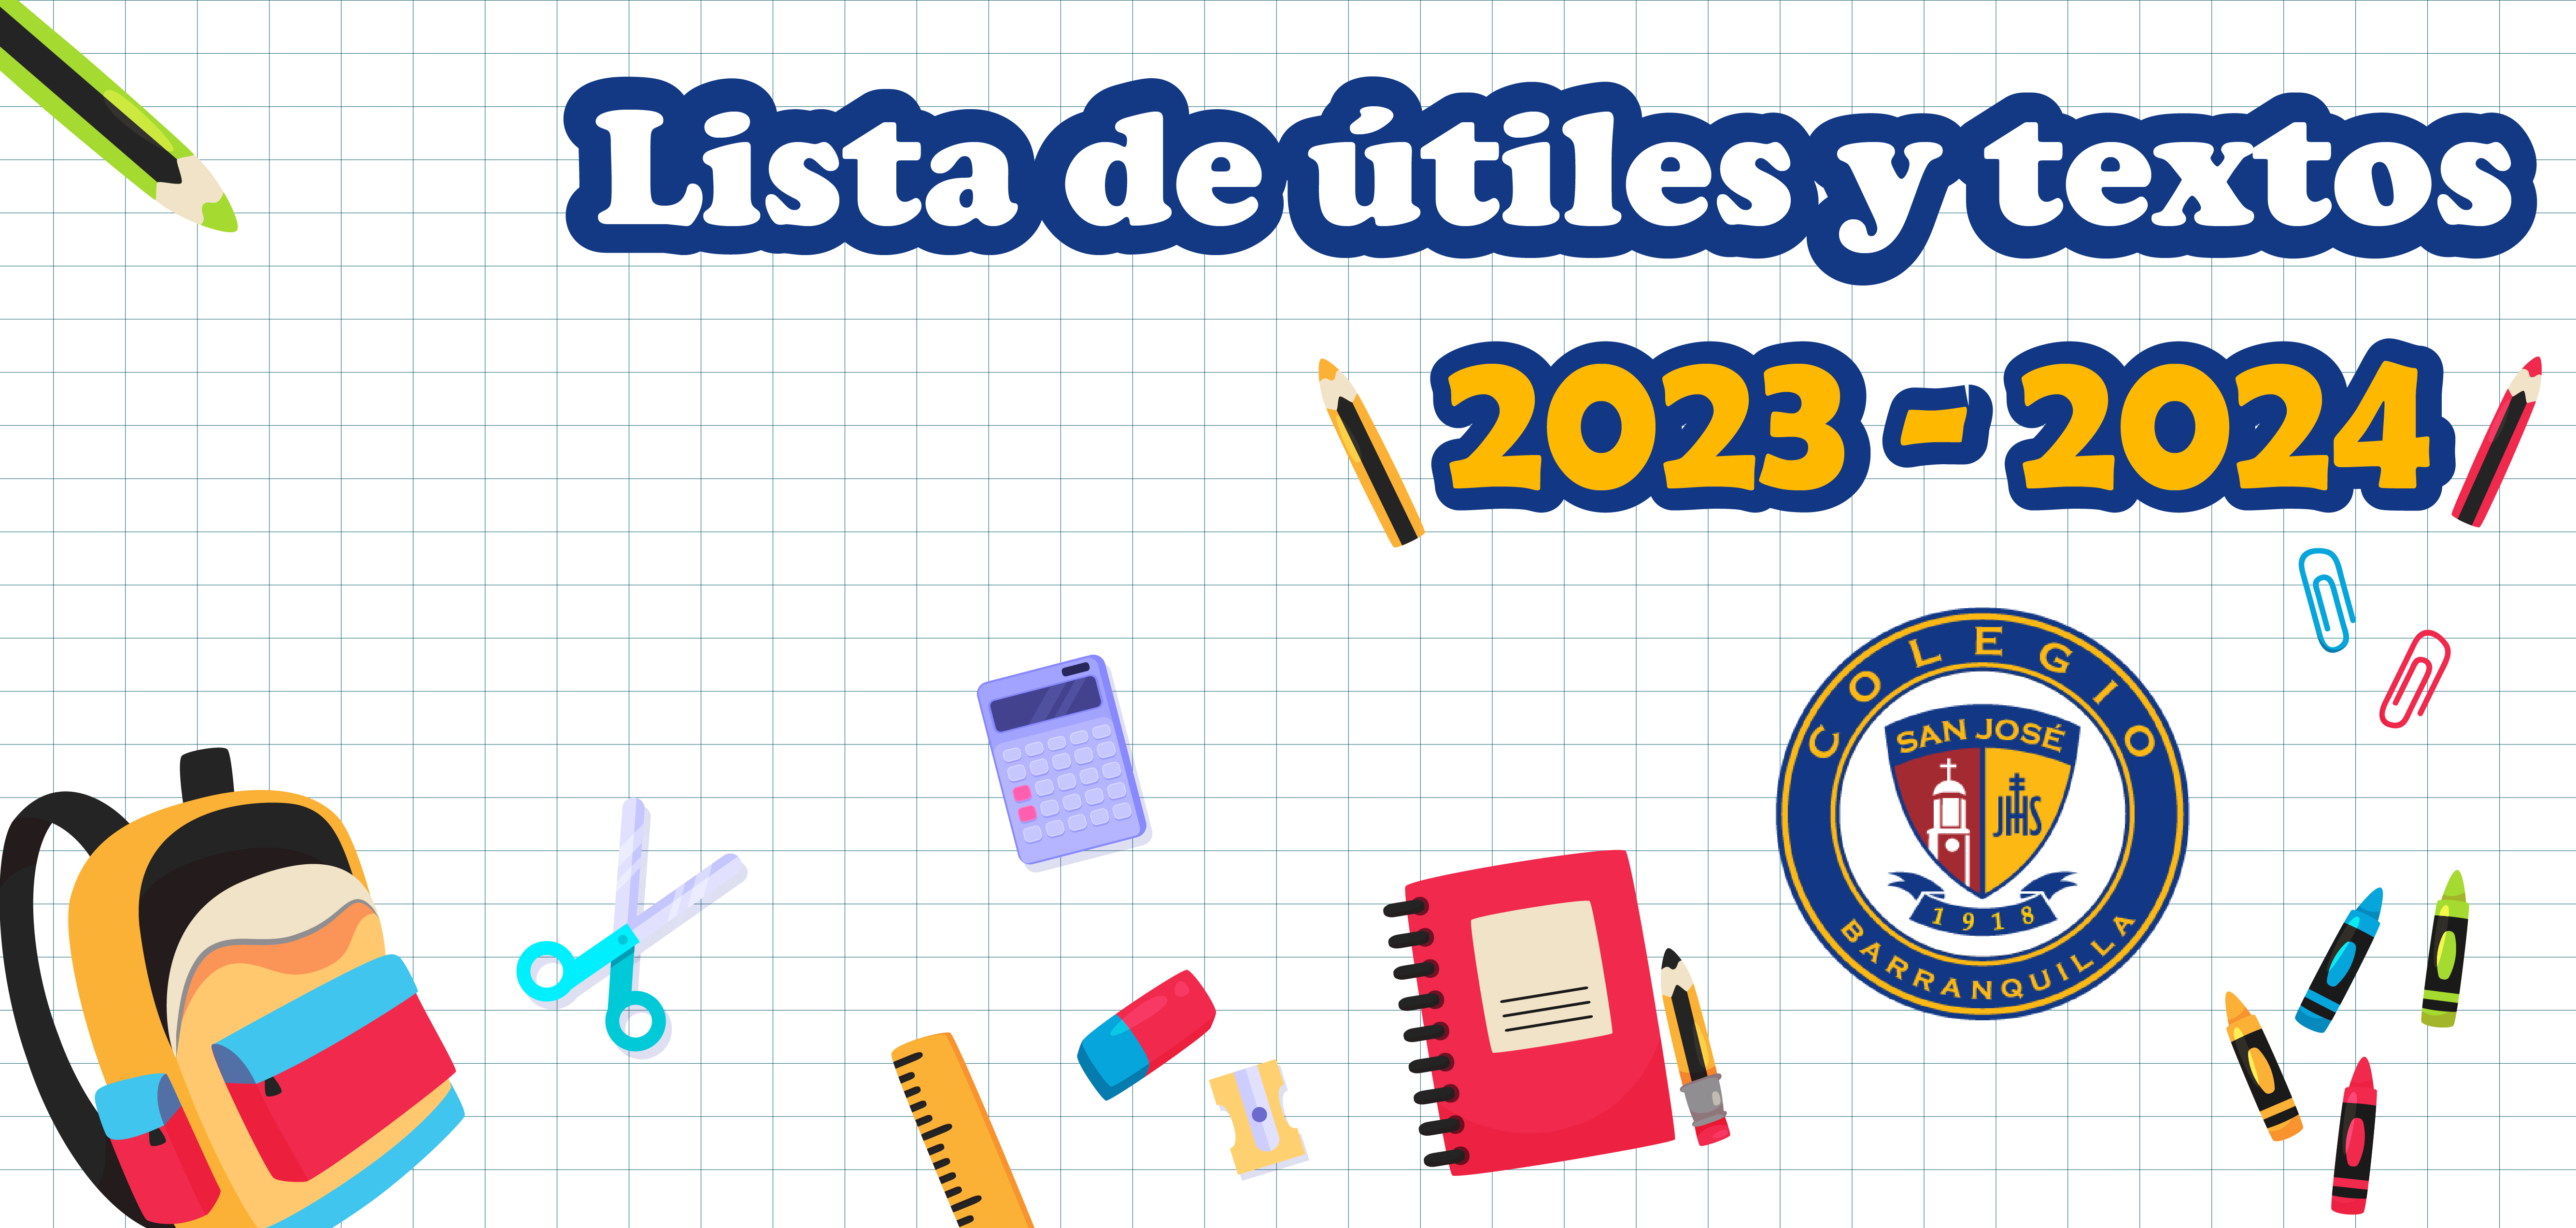 Lista de útiles escolares 2023 -2024 - Colegio San José Barranquilla